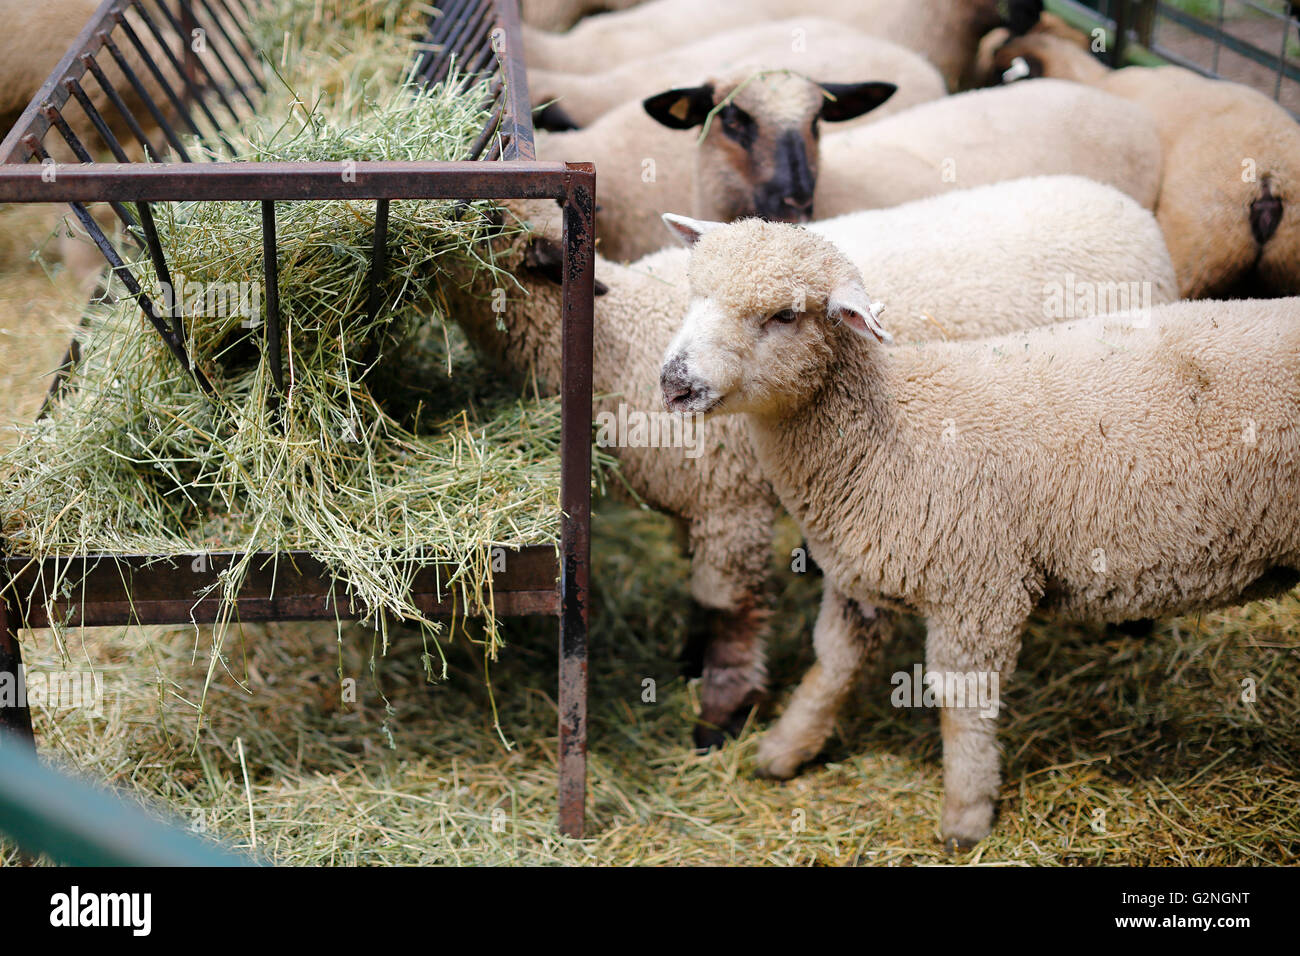 Schaf Essen Heu in den Hof auf dem Bauernhof Stockfoto